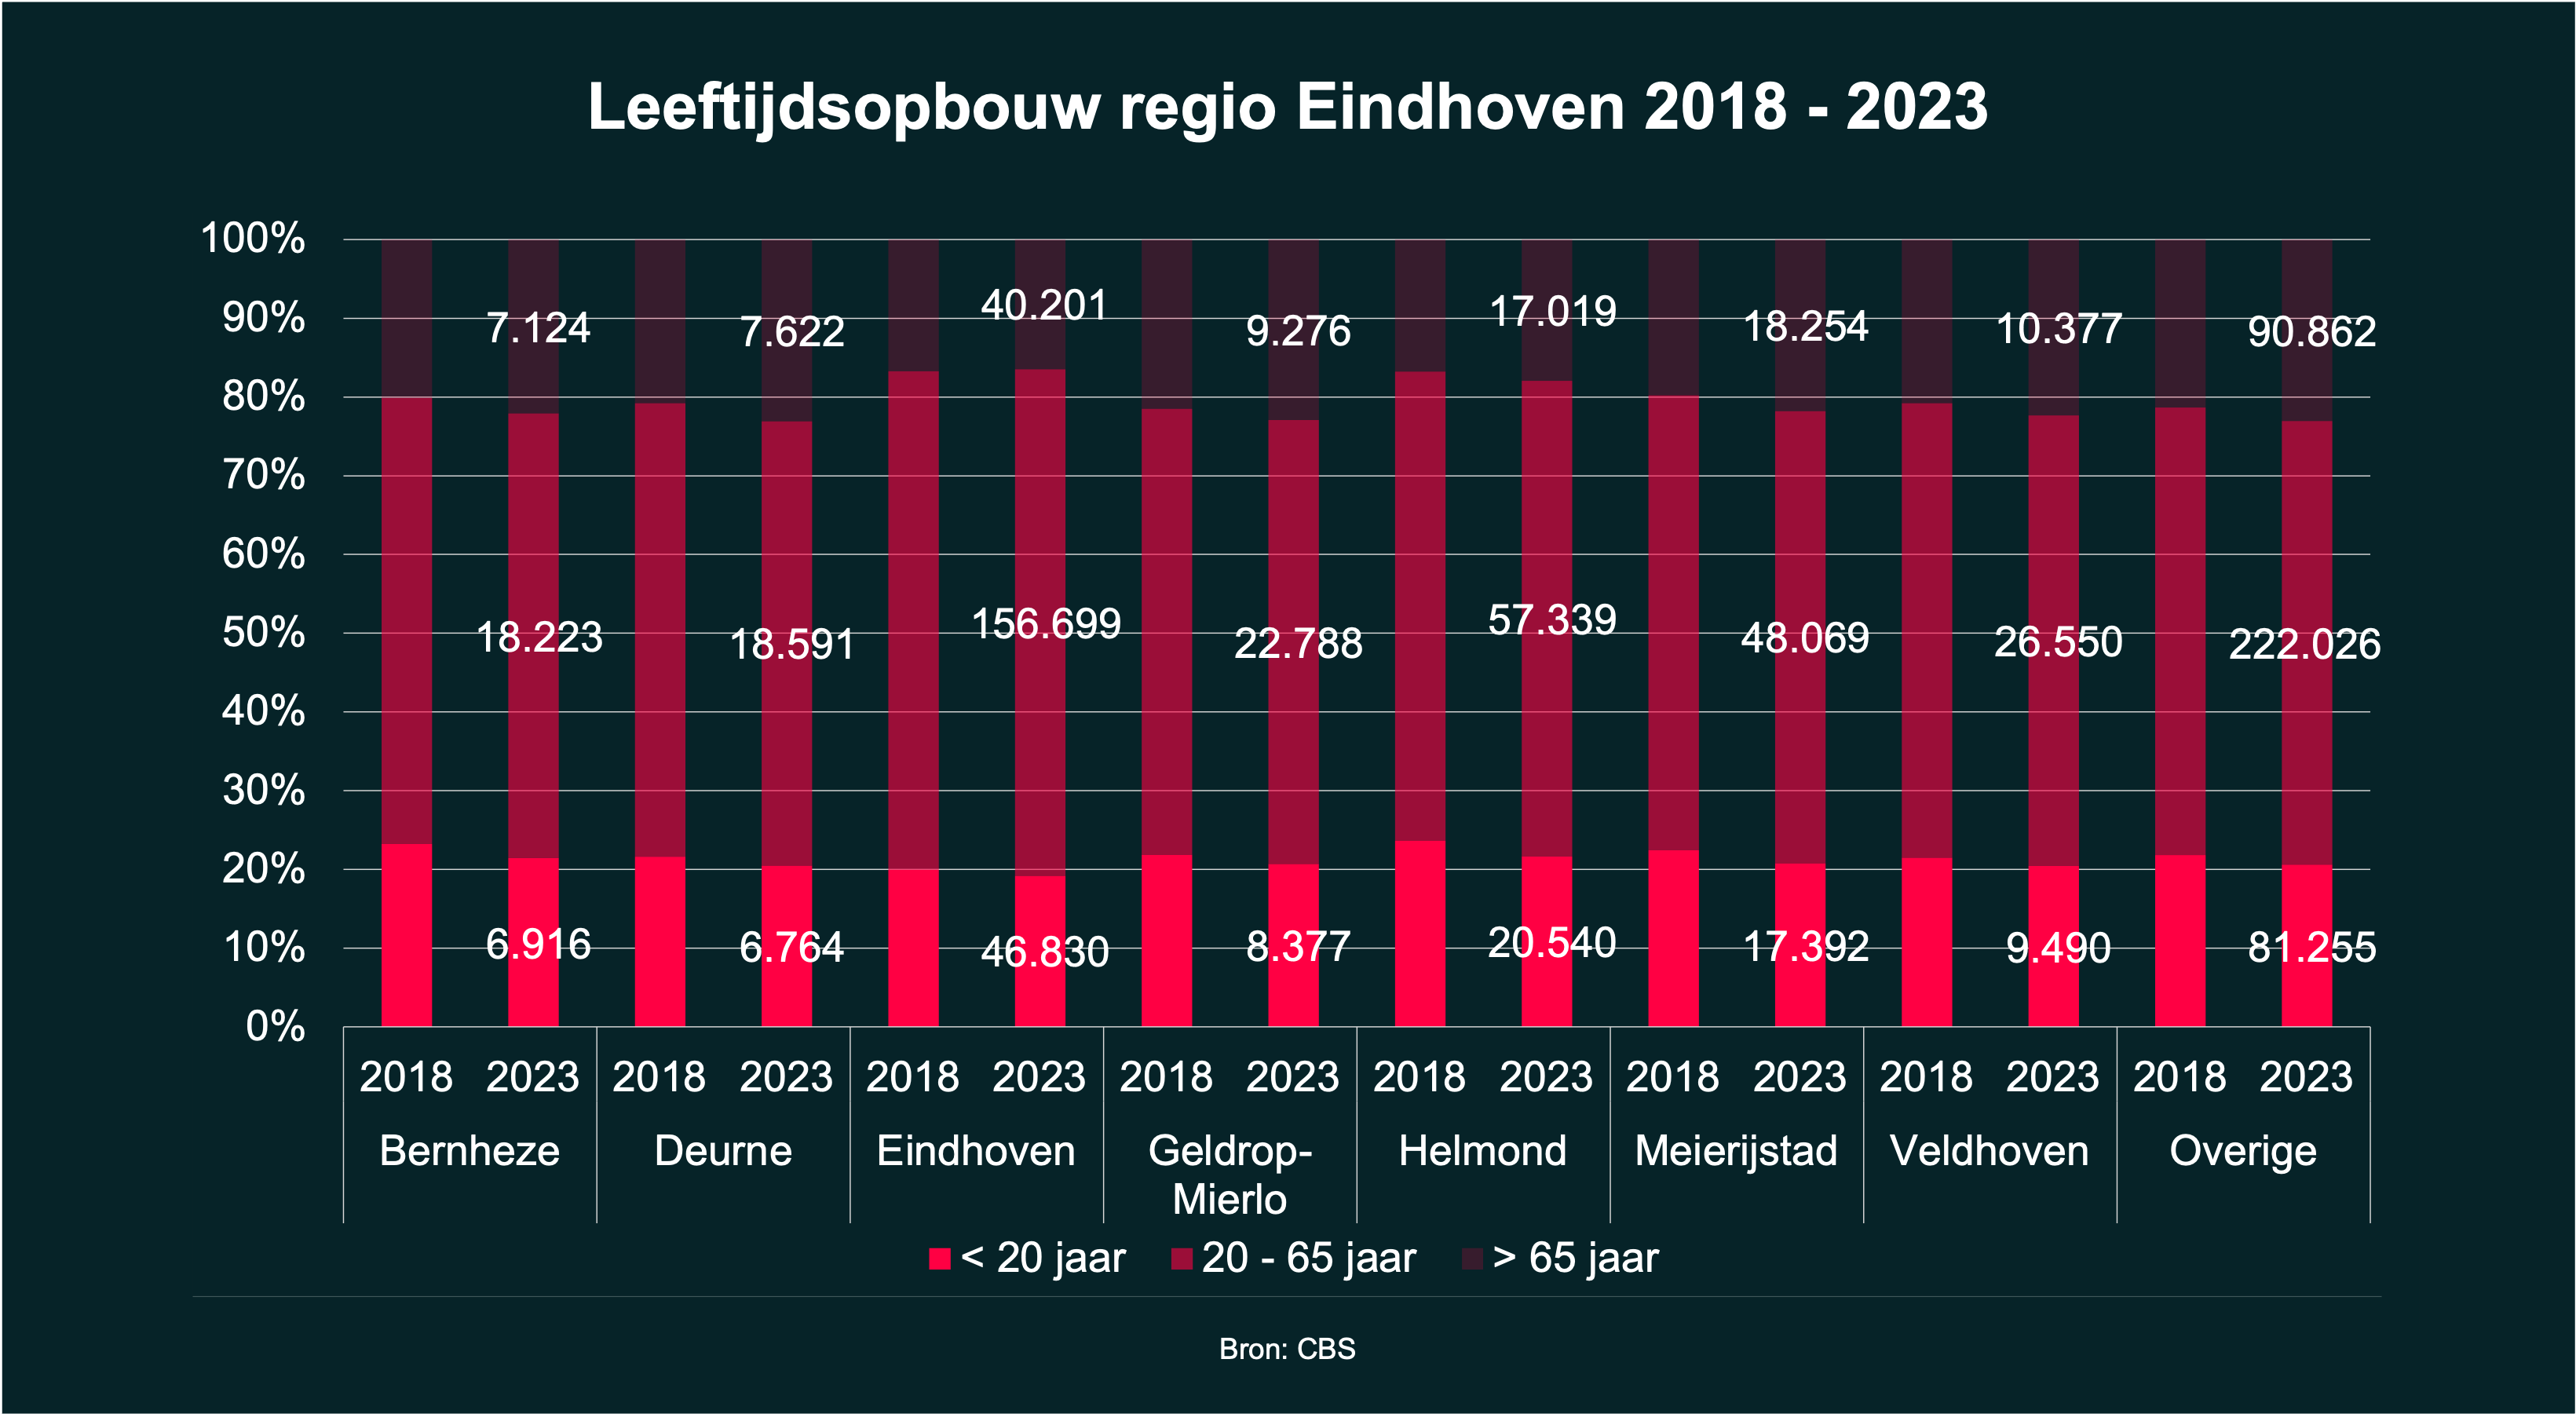 Leeftijdsopbouw Eindhoven